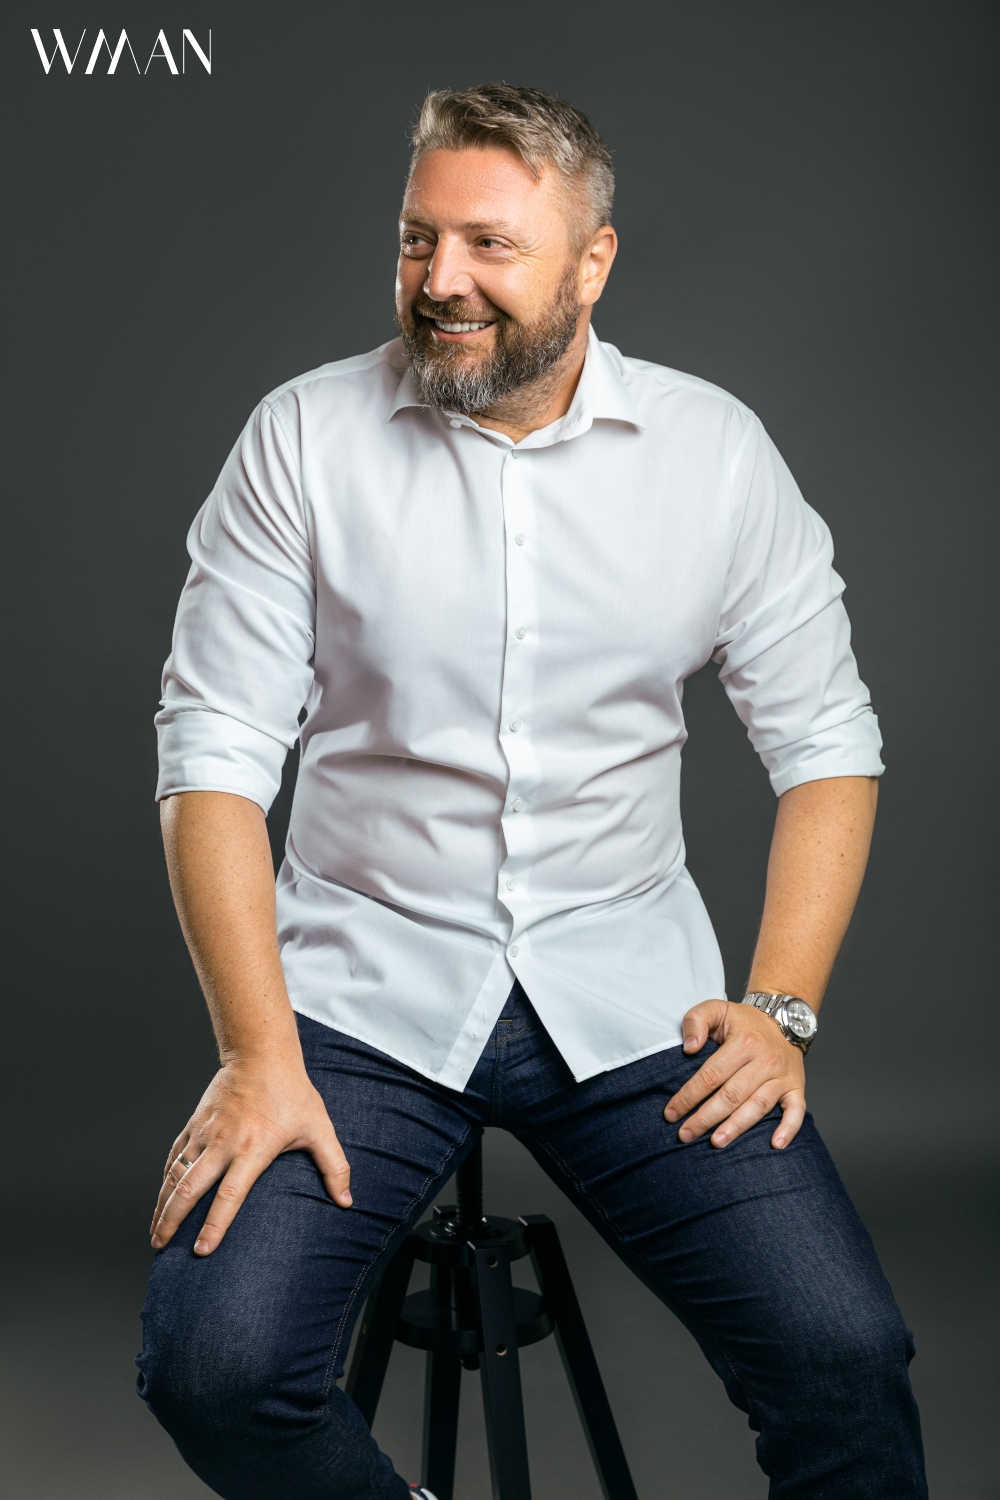 Mihailo Ponjavic eCommerce 5 WMAN intervju: Mihailo Ponjavić, direktor sektora za eCommerce poslovanje